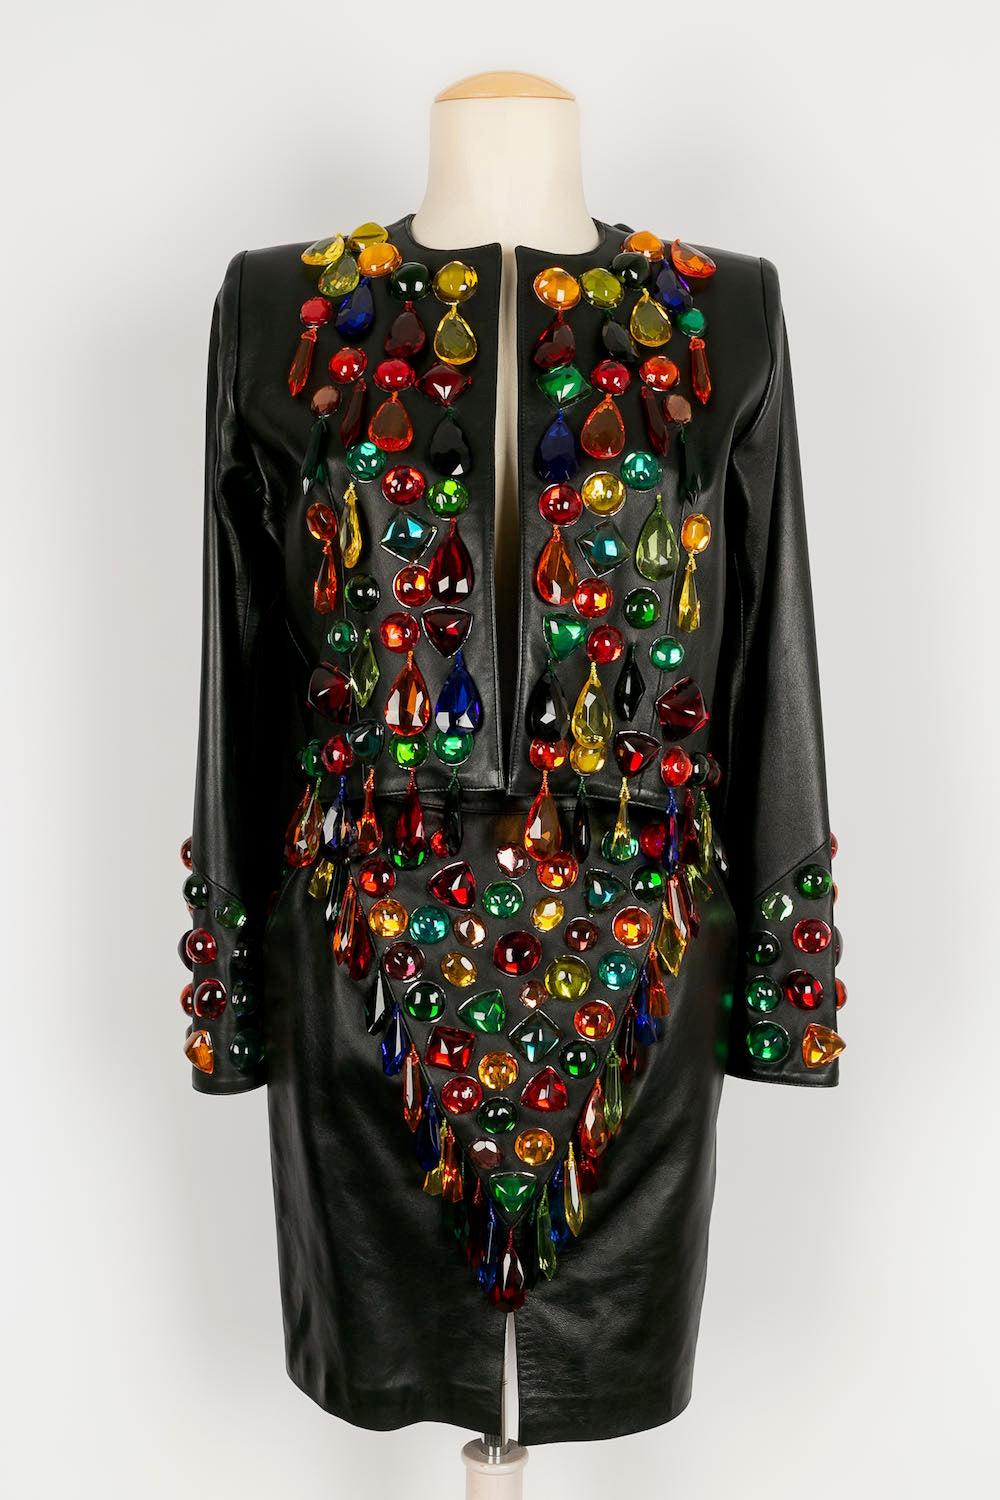 Yves Saint Laurent (Made in France) Ensemble veste et jupe en cuir décoré de puces multicolores. Taille 36FR.
Collectional Prêt-à-porter Printemps-Eté 1990.
Quelques costumes comme celui-ci ont été réalisés à l'époque, et l'un d'entre eux se trouve